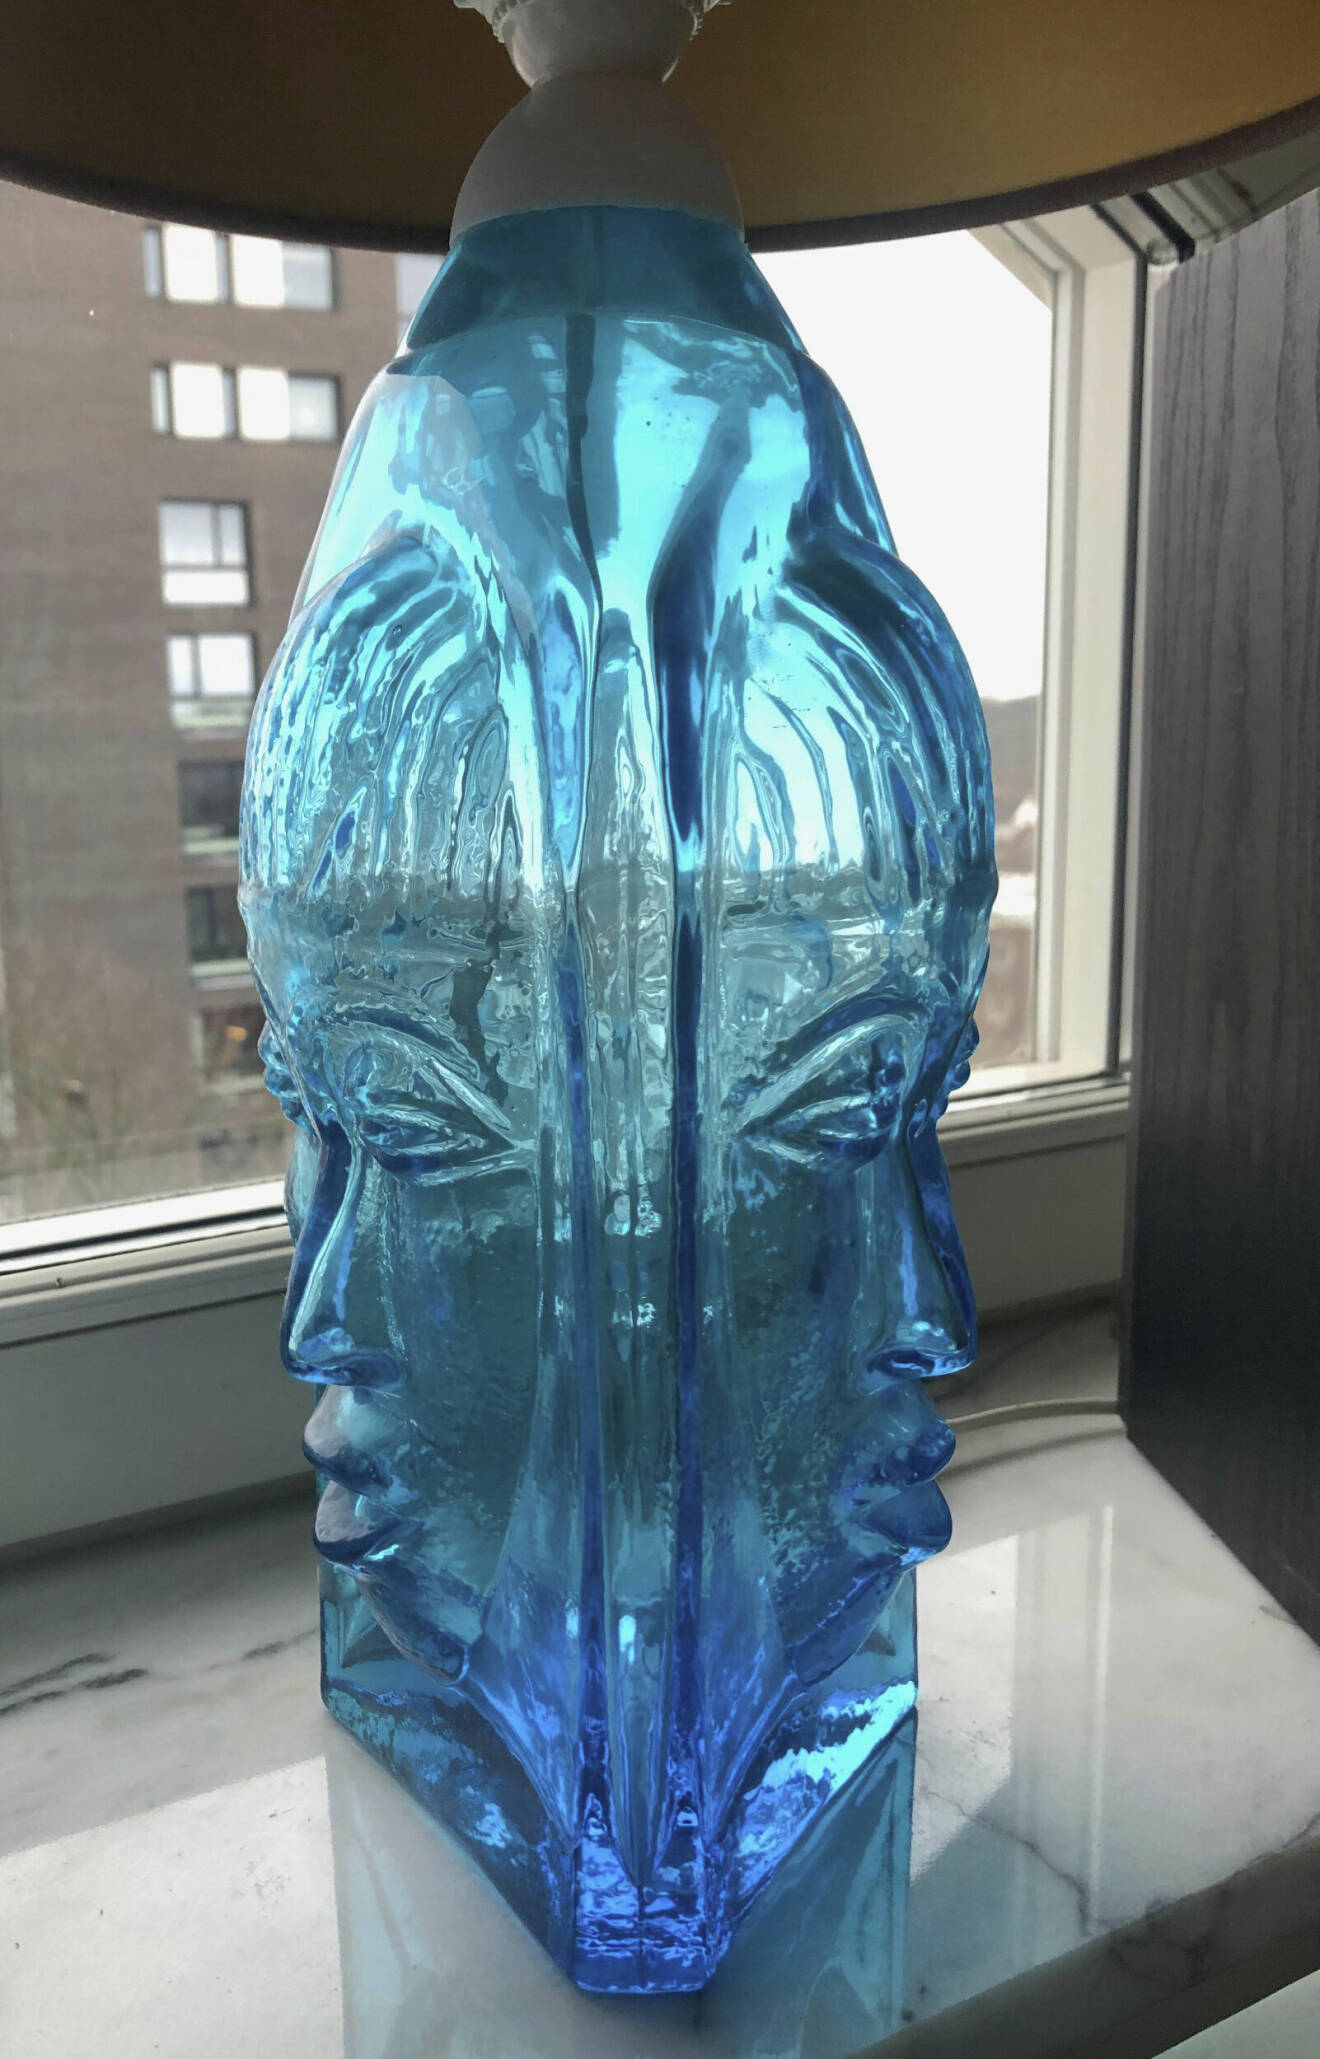 Lampa i blått glas med två kvinnoansikten på foten.